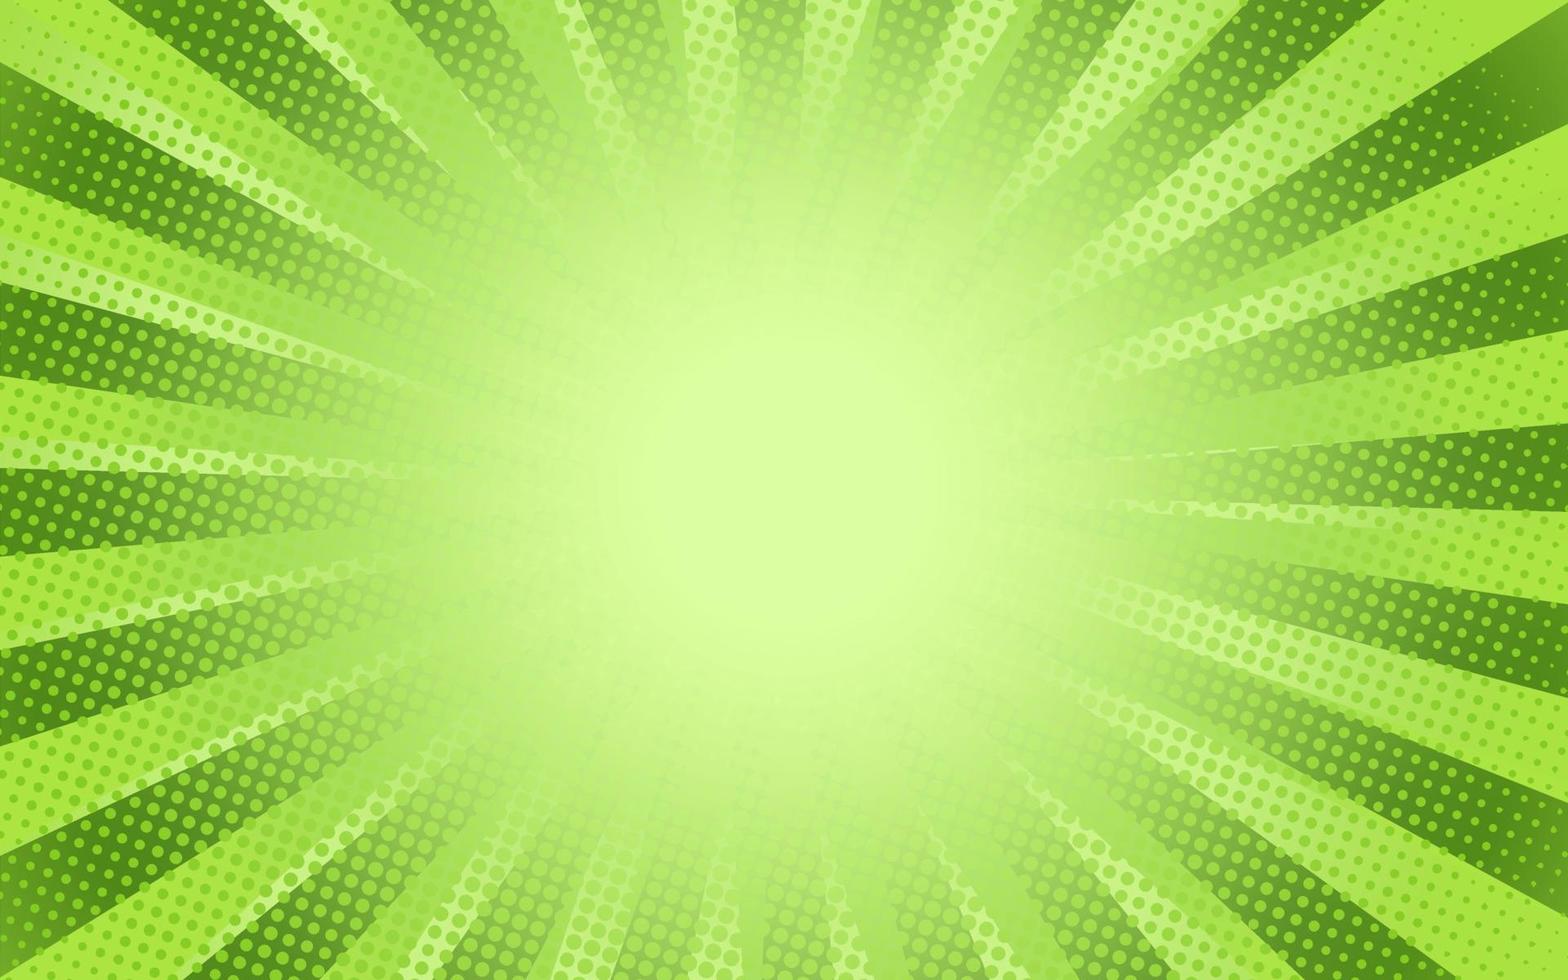 Sonnenstrahlen Retro-Vintage-Stil auf grünem Hintergrund, Comic-Muster mit Starburst und Halbton. Cartoon-Retro-Sunburst-Effekt mit Punkten. Strahlen. Banner-Vektor-Illustration vektor